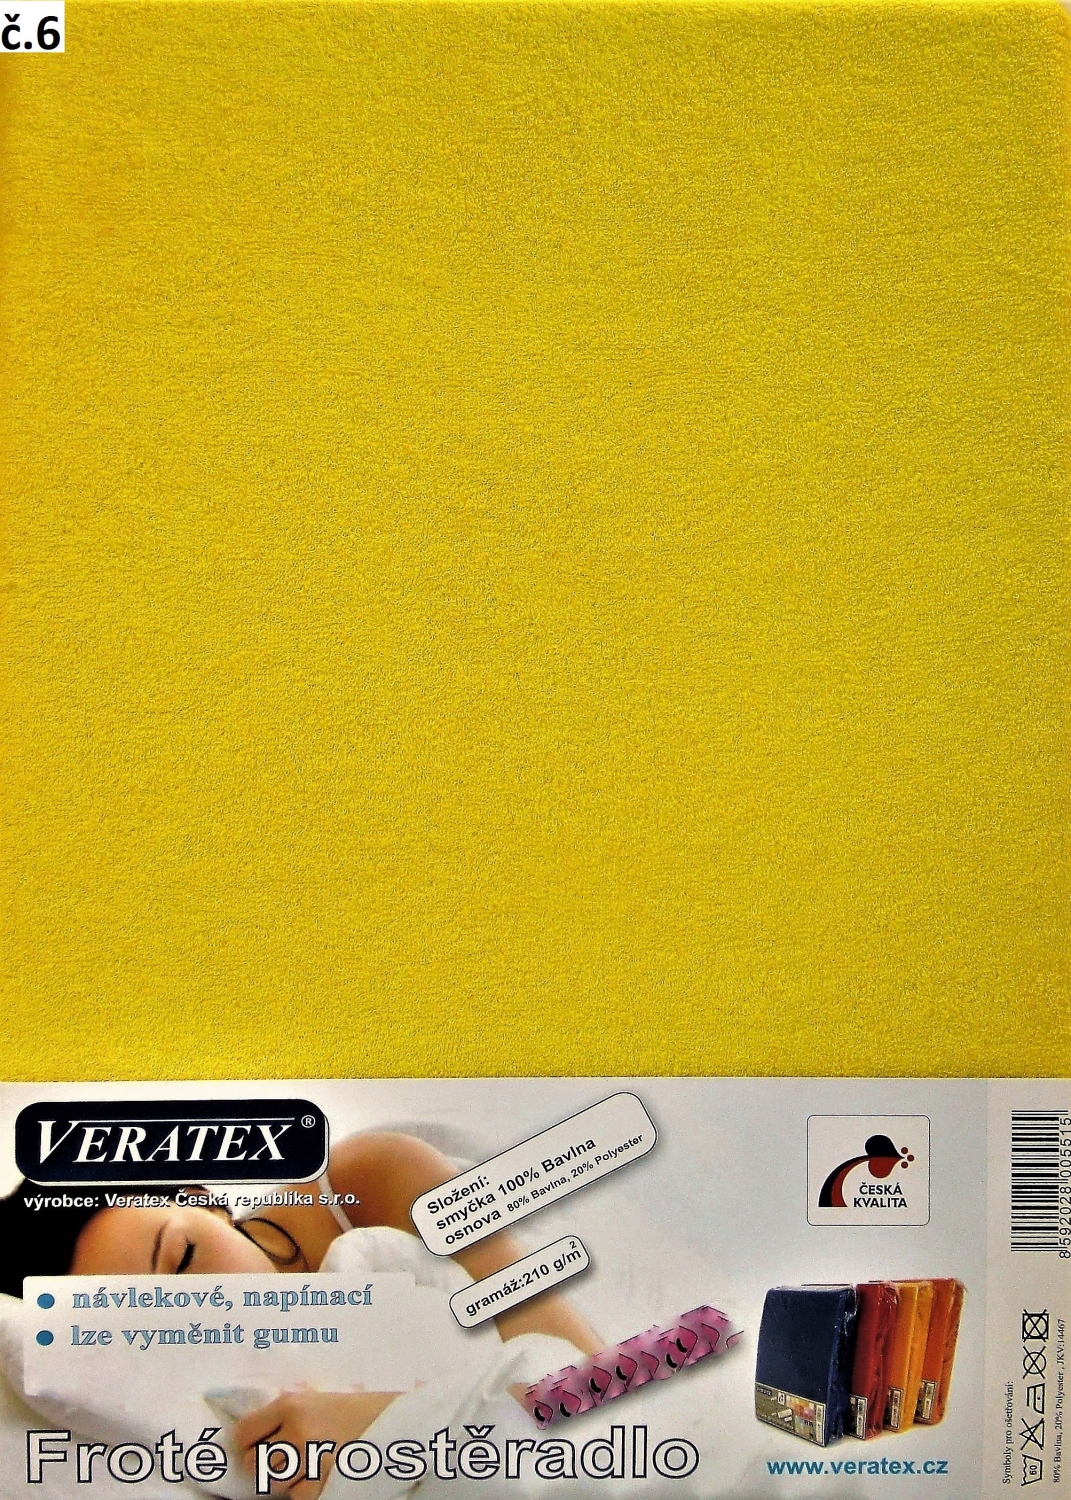 Veratex Froté prostěradlo jednolůžko 90x200/40cm (č. 6-stř.žluté)